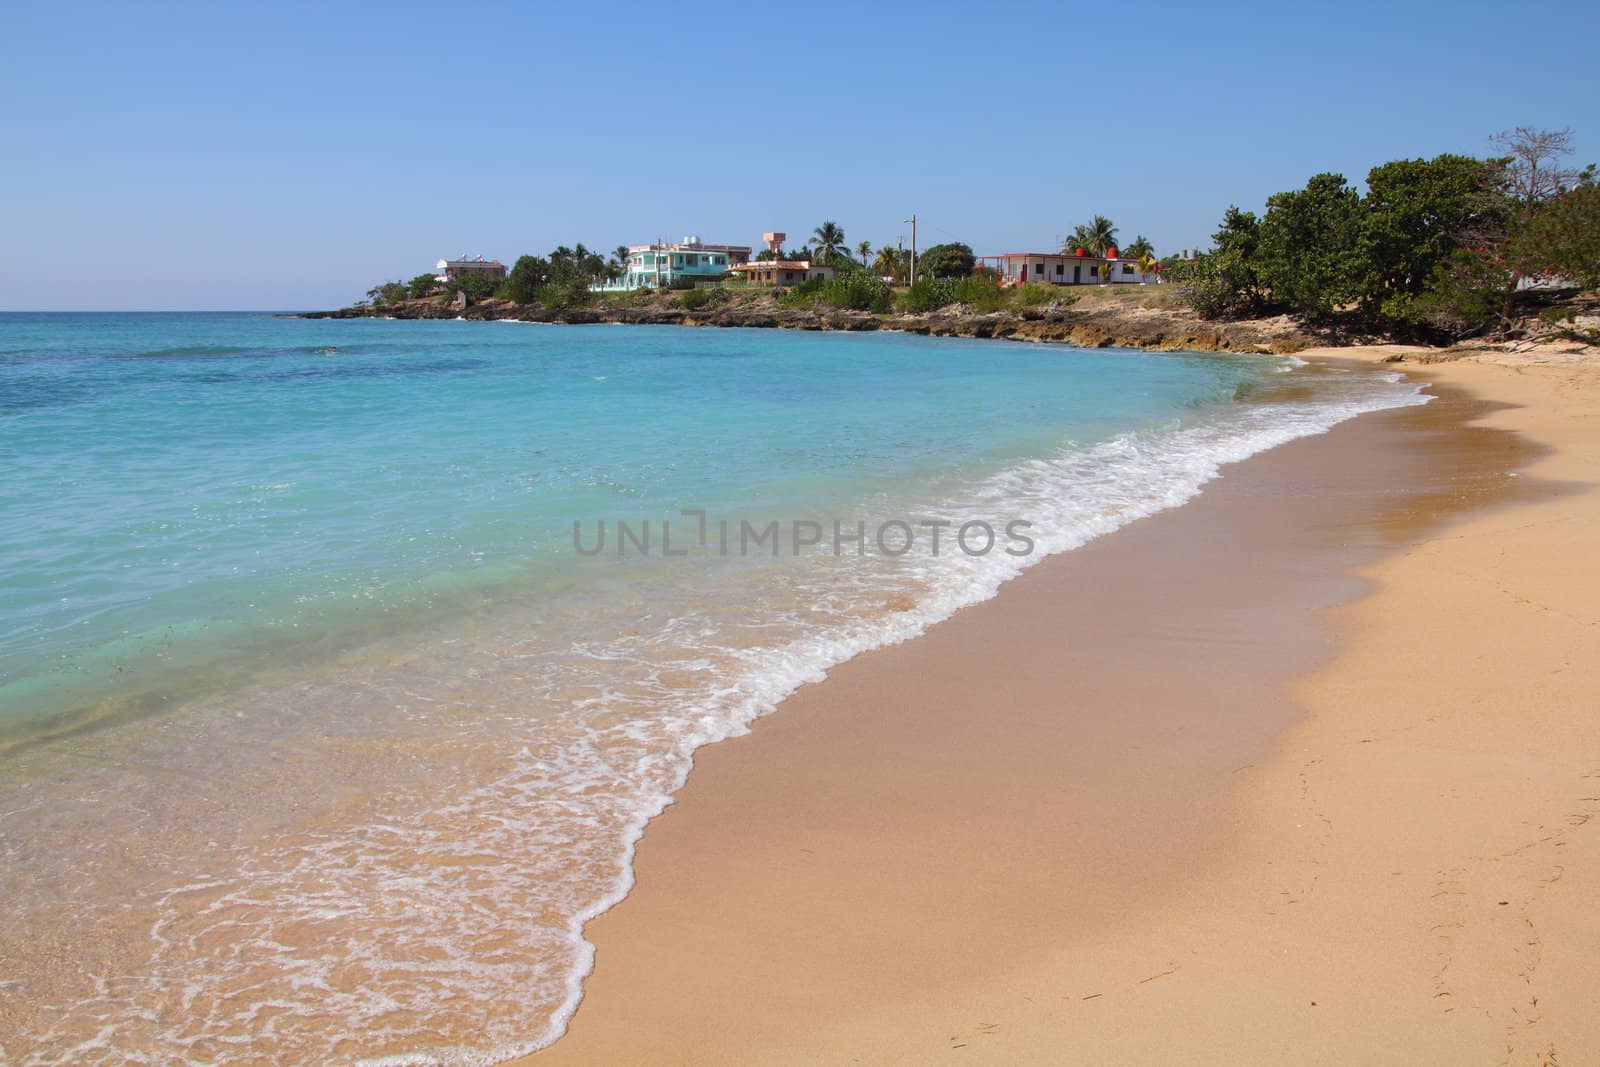 Cuba beach by tupungato